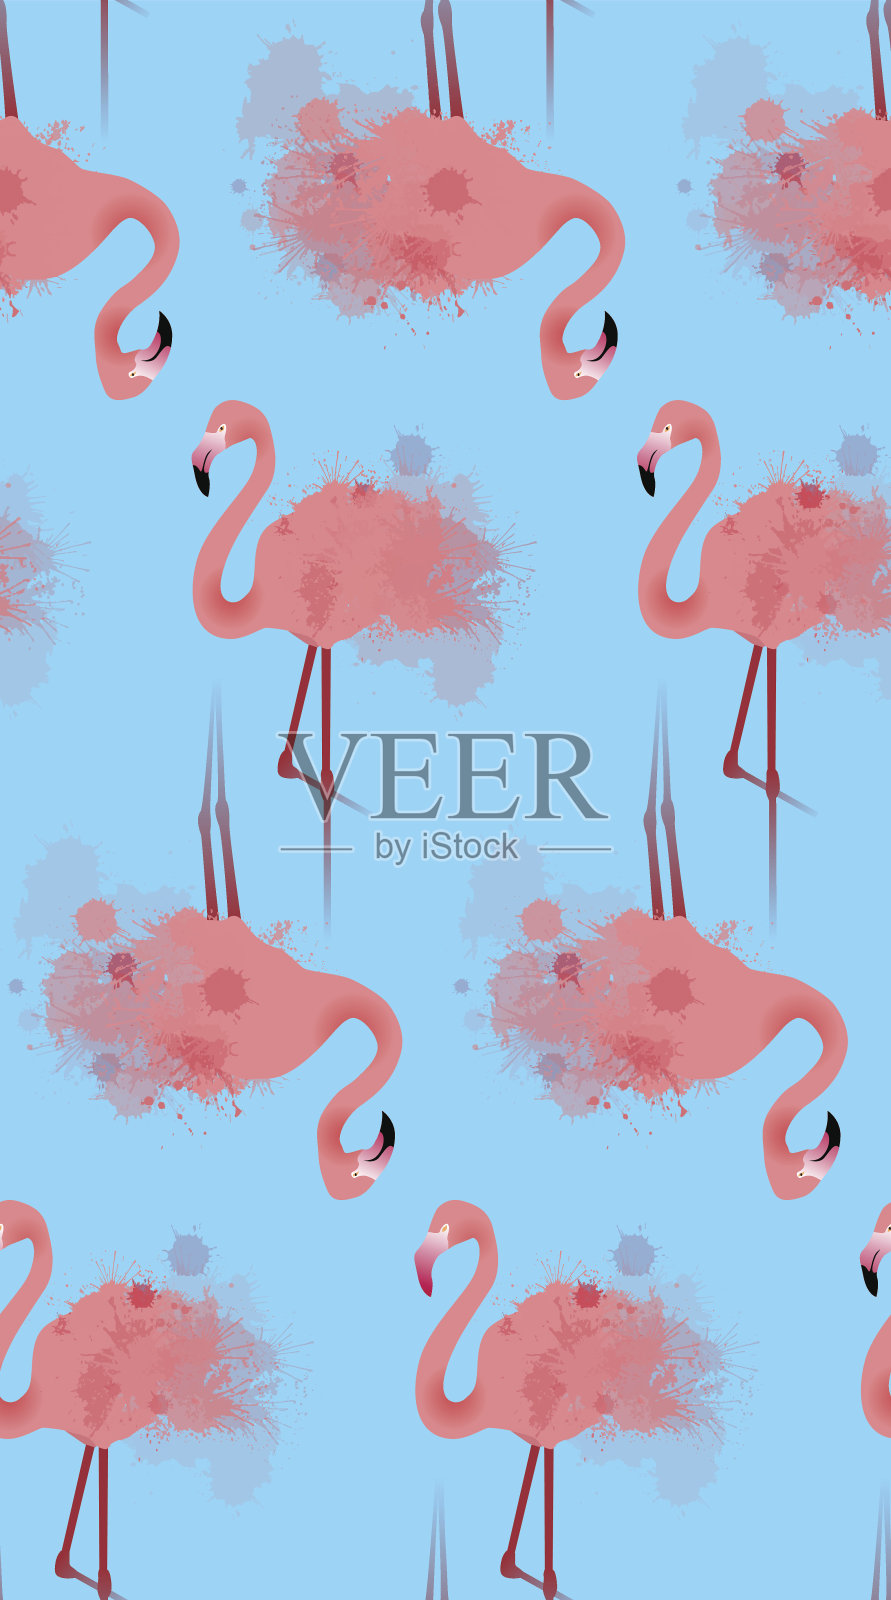 无缝纹理的粉红色火烈鸟与水彩飞溅在蓝色的背景。插画图片素材